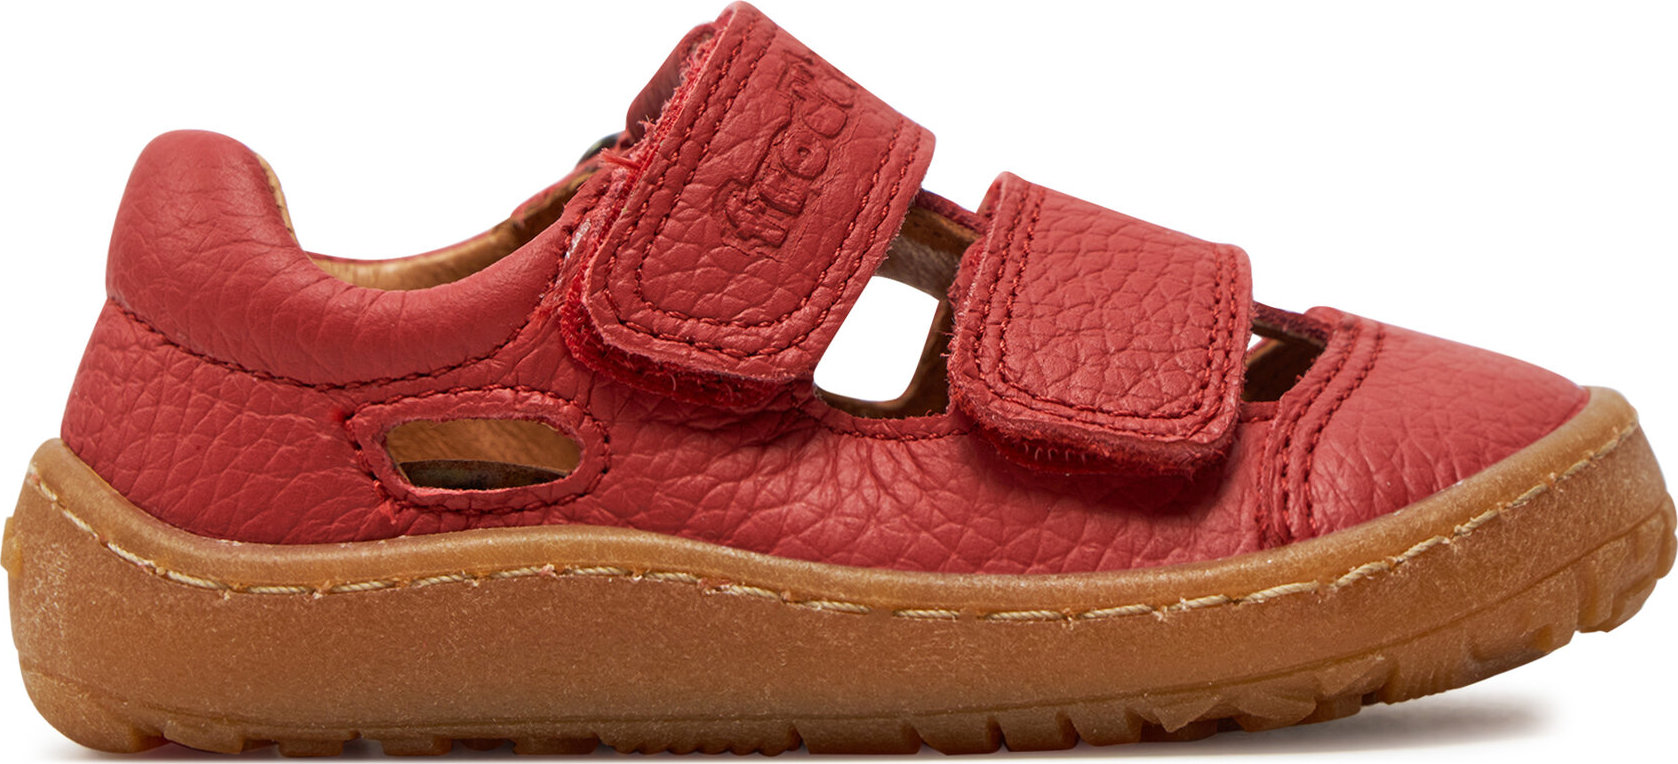 Sandály Froddo Barefoot Sandal G3150266-5 M Red